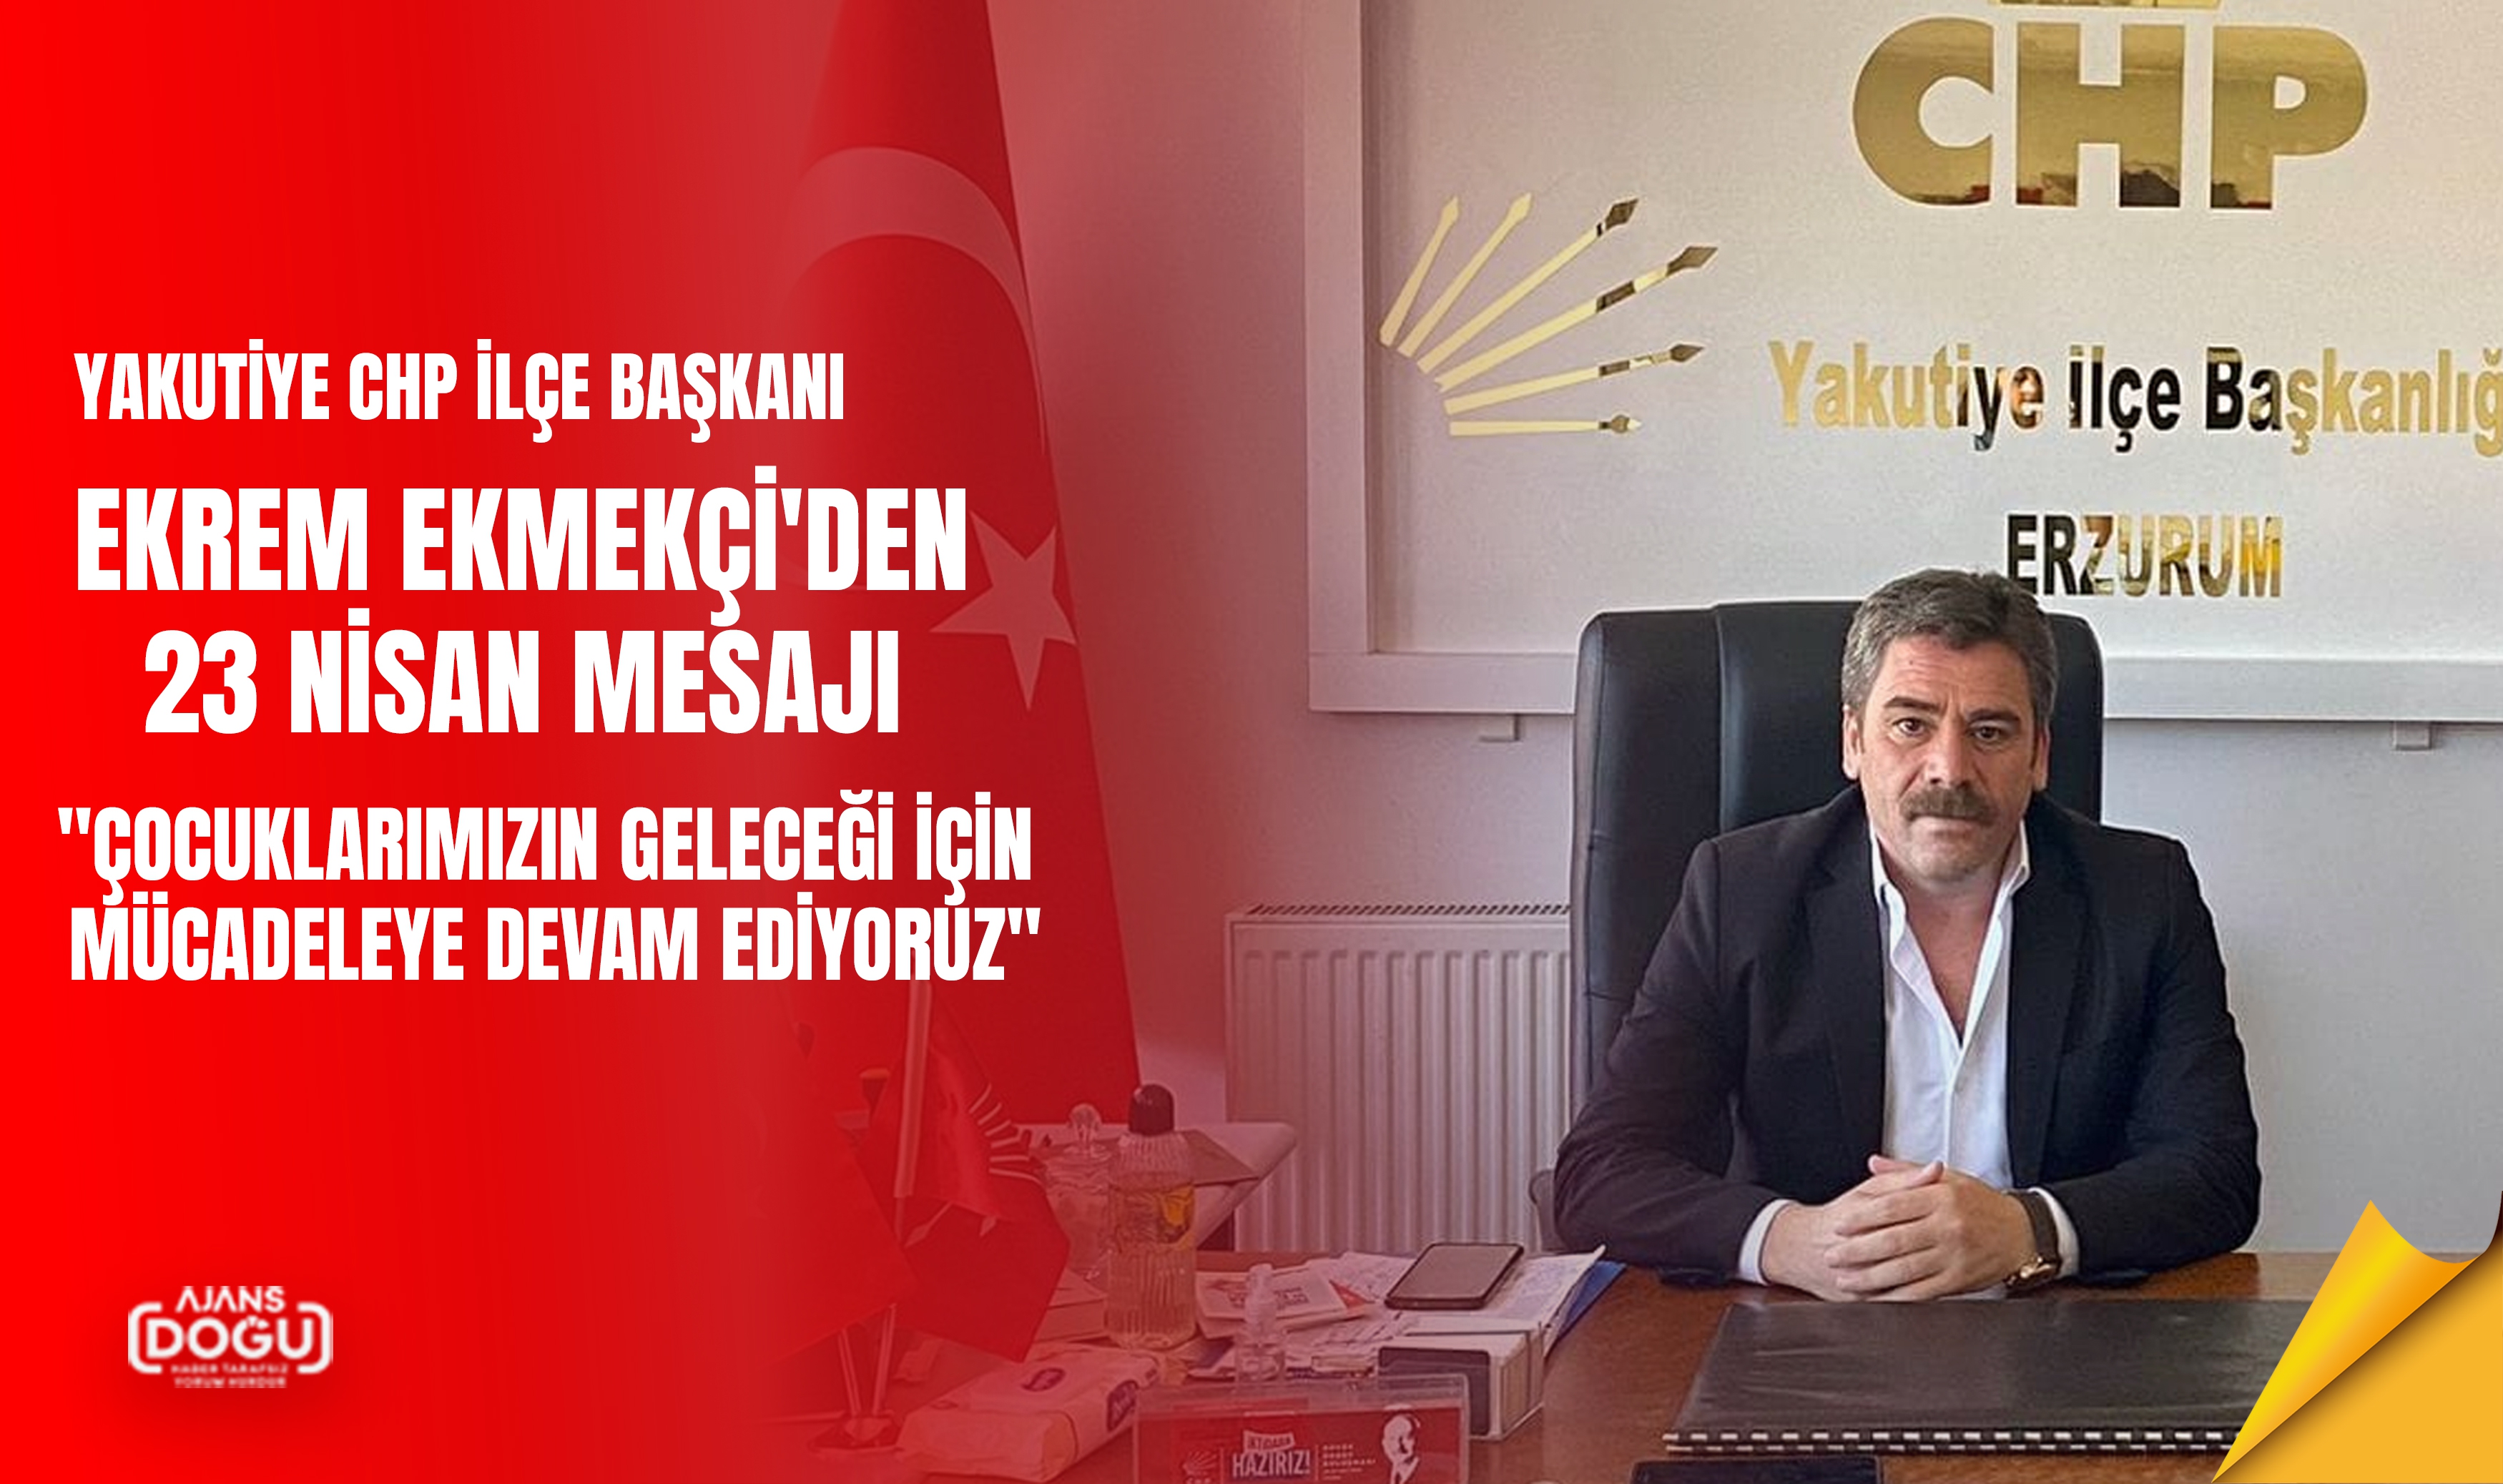 Yakutiye CHP İlçe Başkanı Ekrem Ekmekçi'den 23 Nisan Mesajı